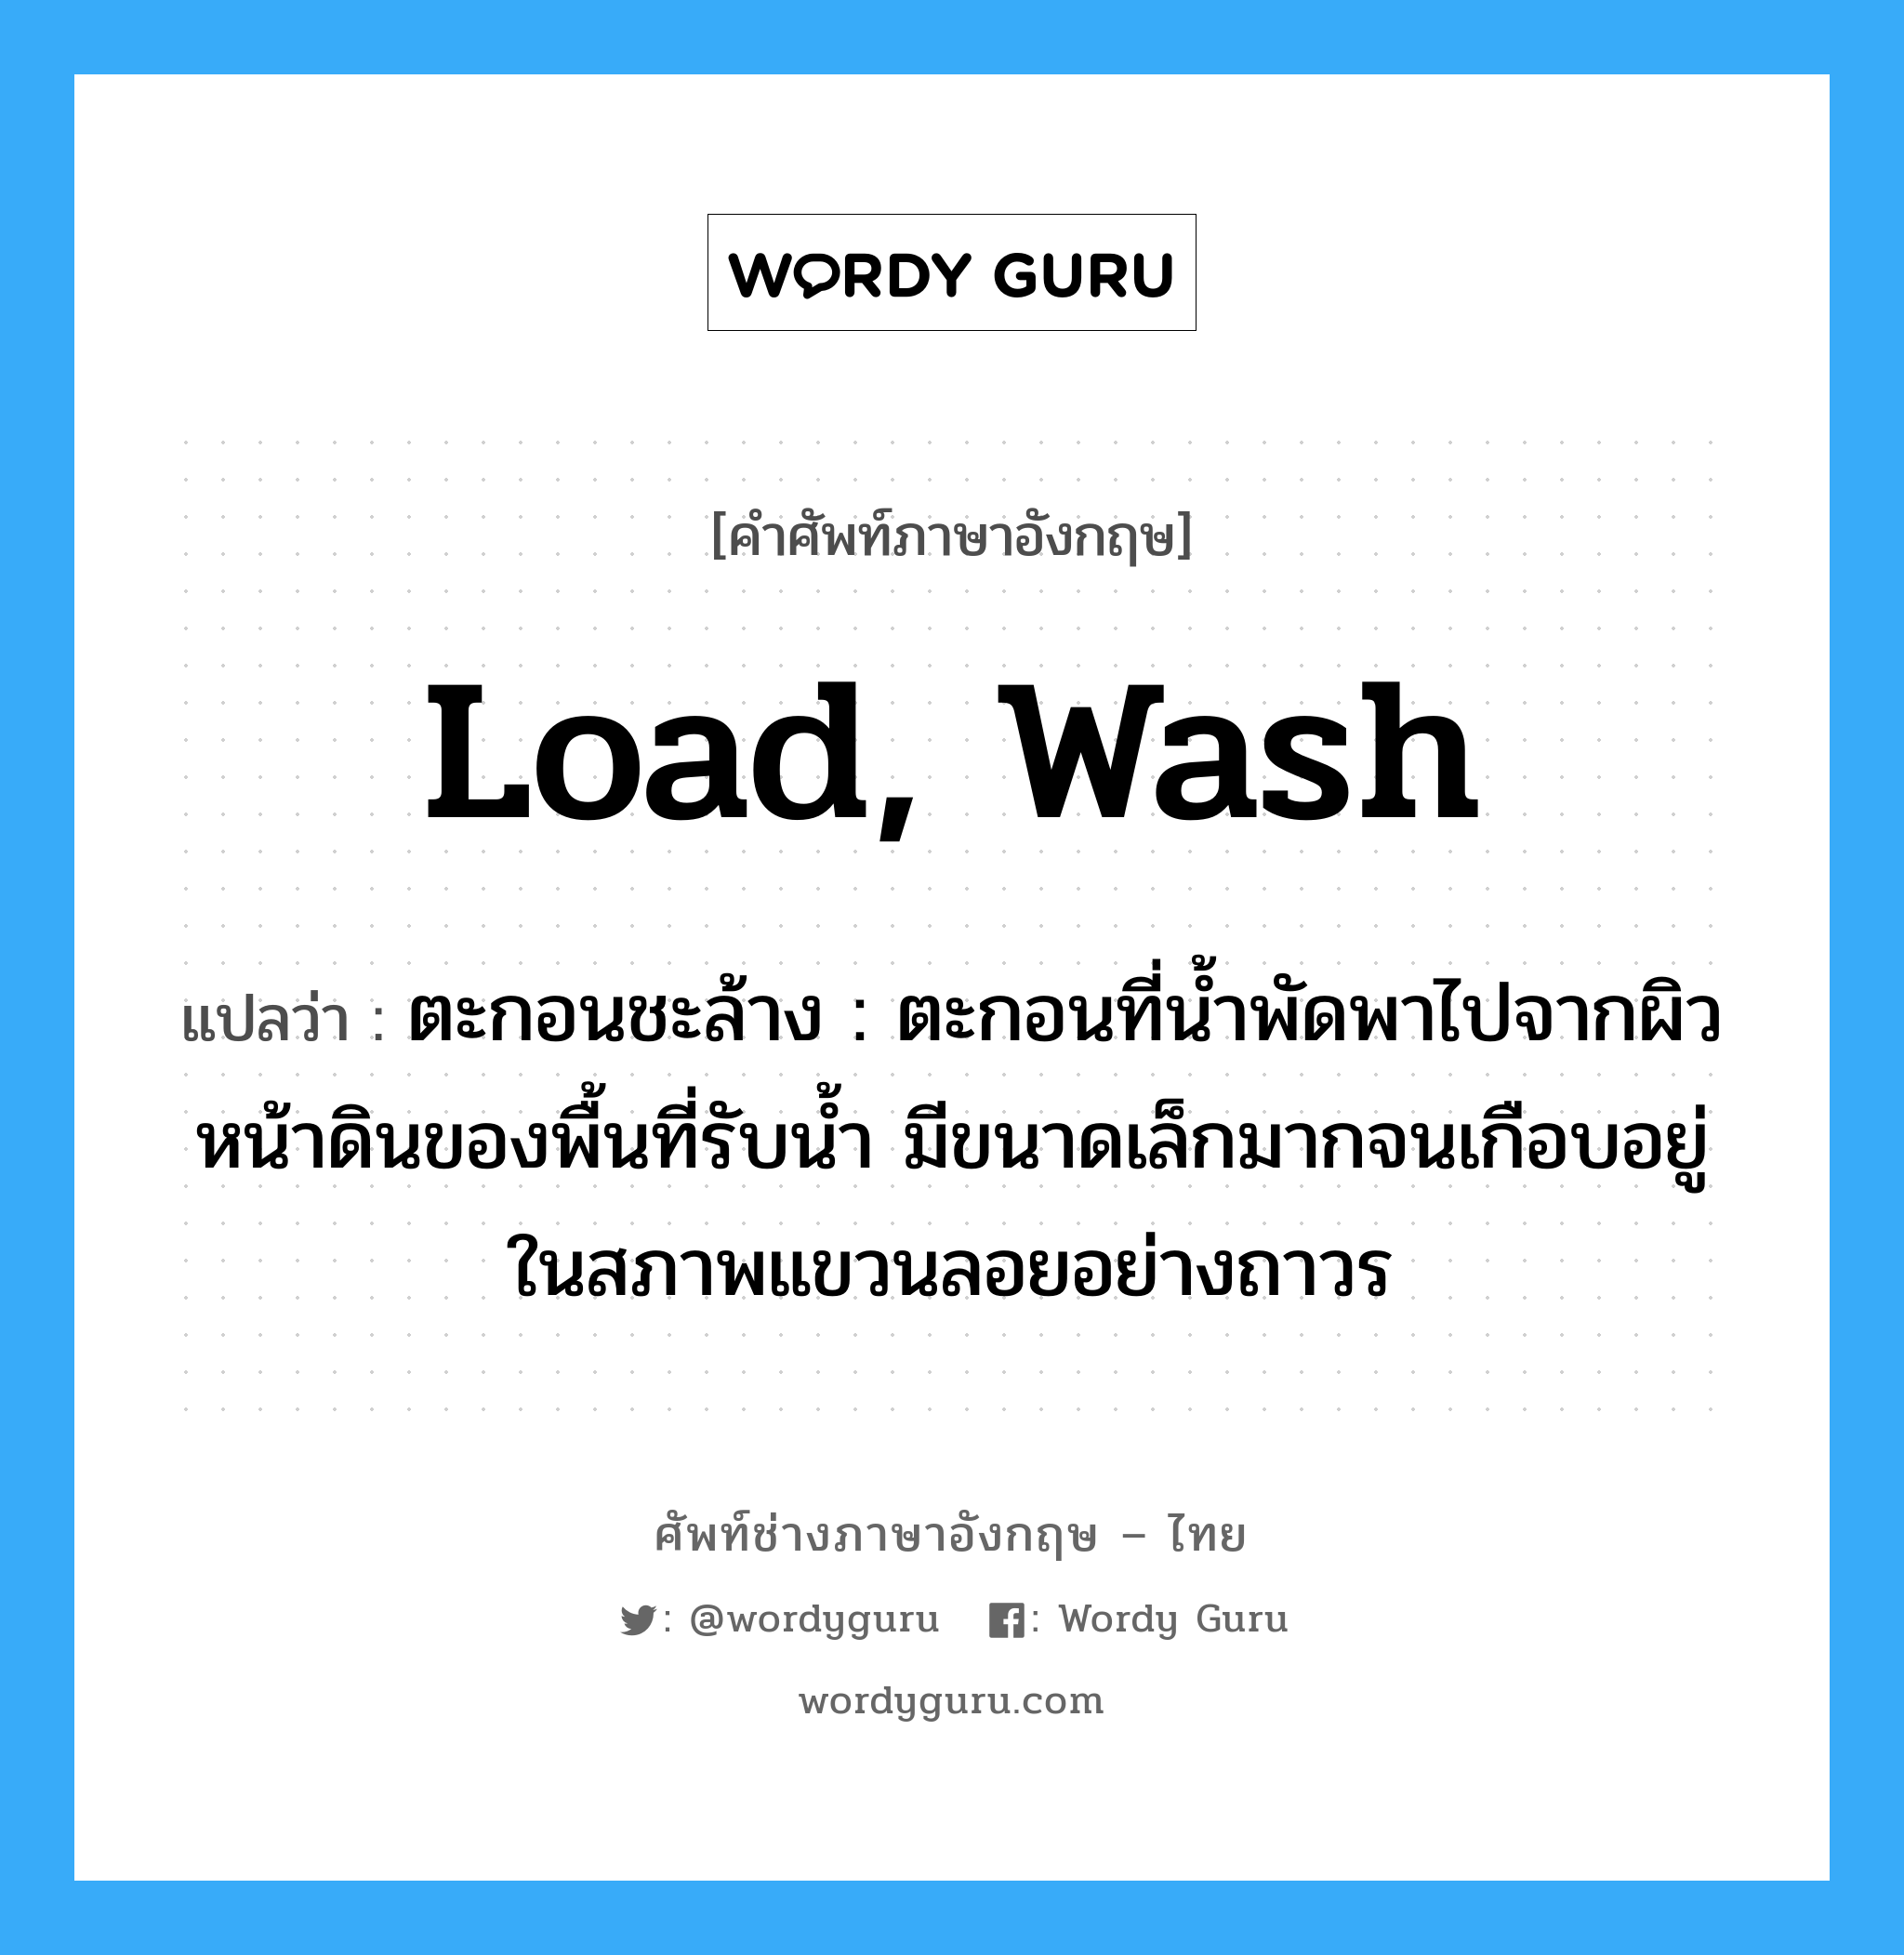 load, wash แปลว่า?, คำศัพท์ช่างภาษาอังกฤษ - ไทย load, wash คำศัพท์ภาษาอังกฤษ load, wash แปลว่า ตะกอนชะล้าง : ตะกอนที่น้ำพัดพาไปจากผิวหน้าดินของพื้นที่รับน้ำ มีขนาดเล็กมากจนเกือบอยู่ในสภาพแขวนลอยอย่างถาวร